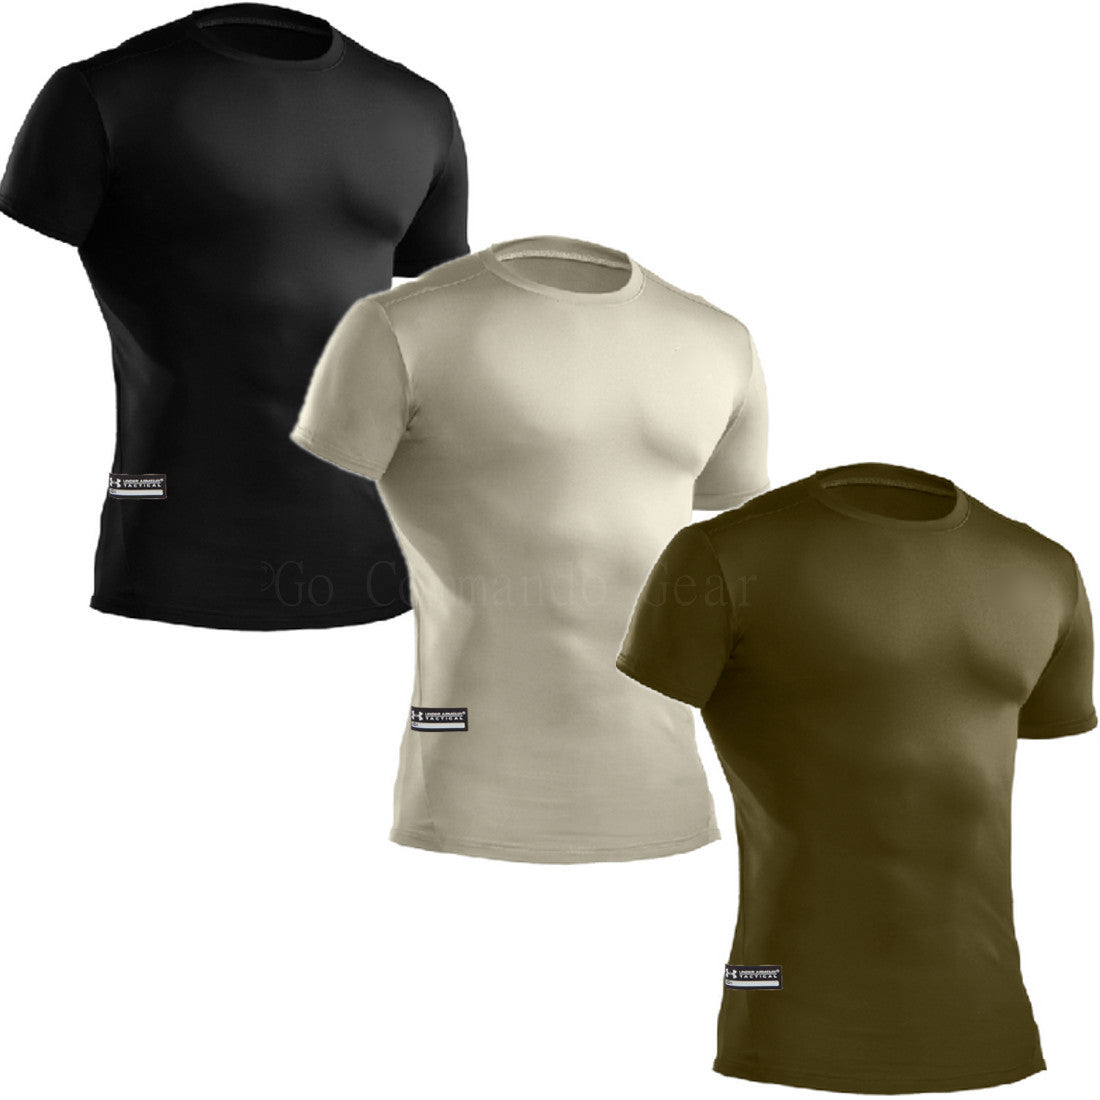 Under Armour Men's Short Sleeve Tactical Tech T-Shirt - UA Soft